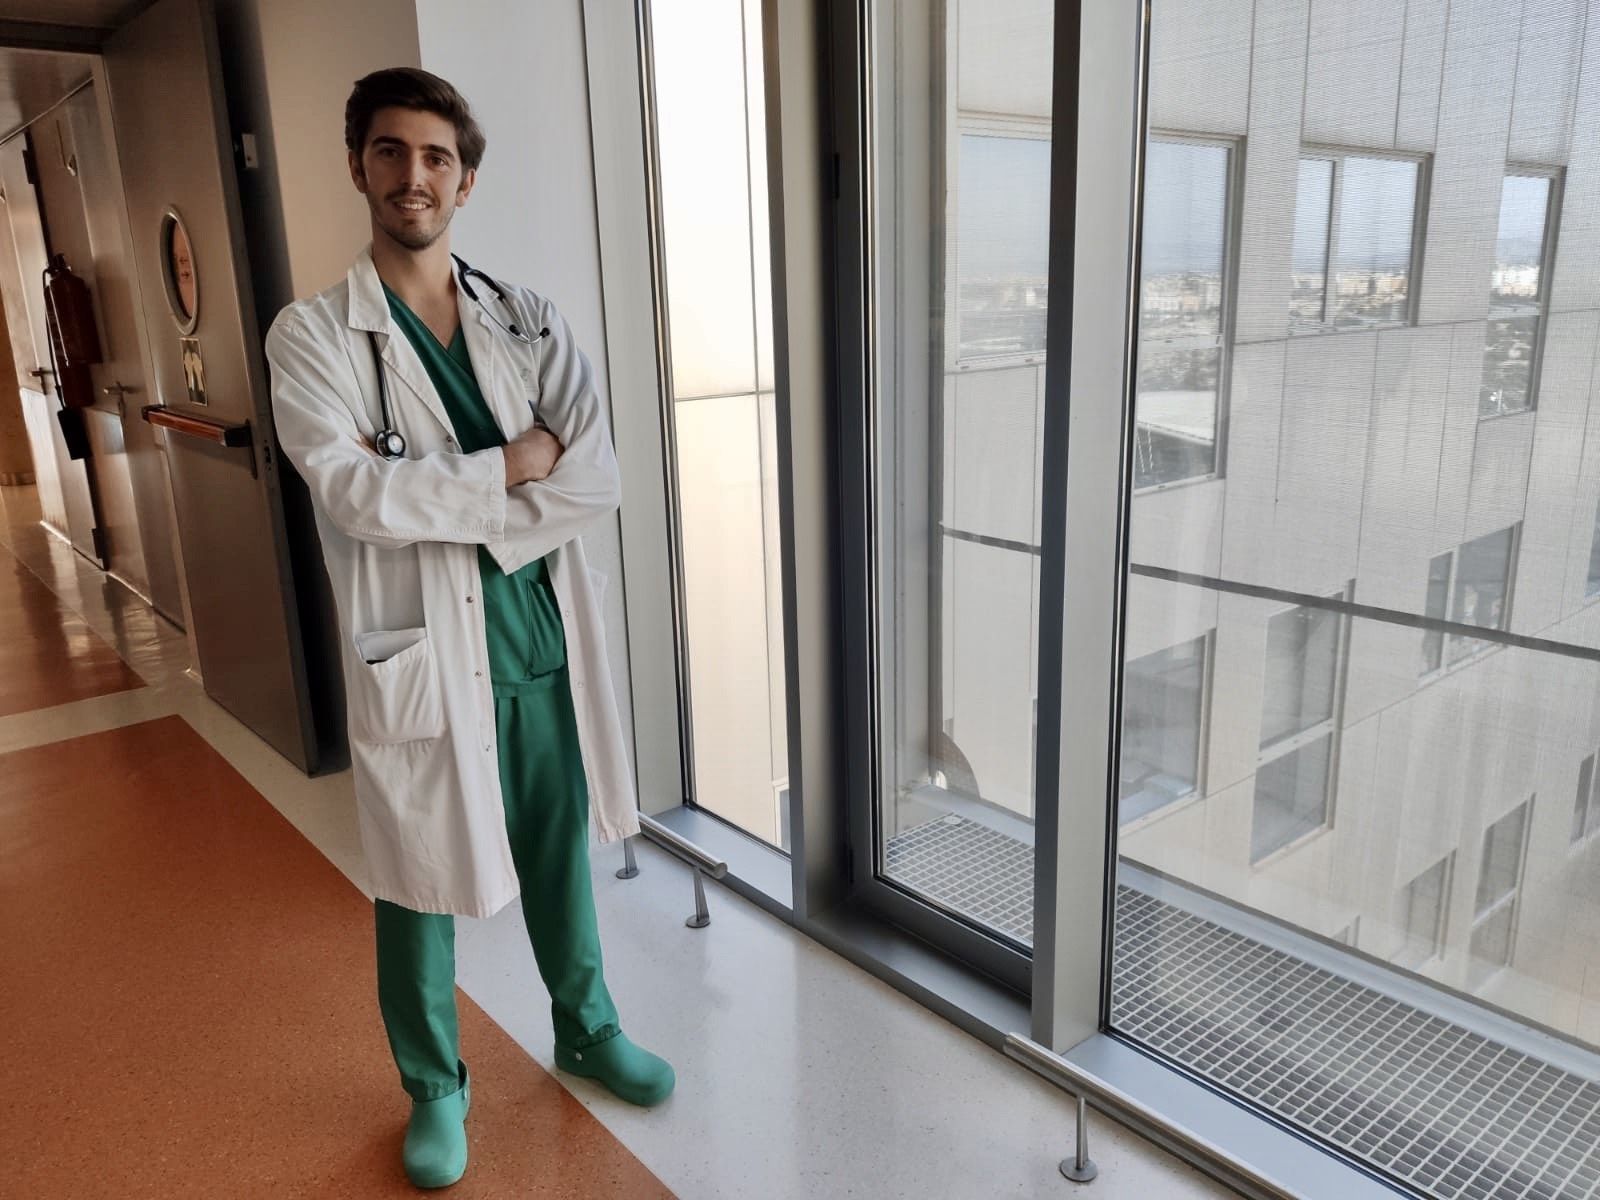 Zóser Saura, graduado en Medicina por la CEU UCH, es ahora médico residente en Cartagena.